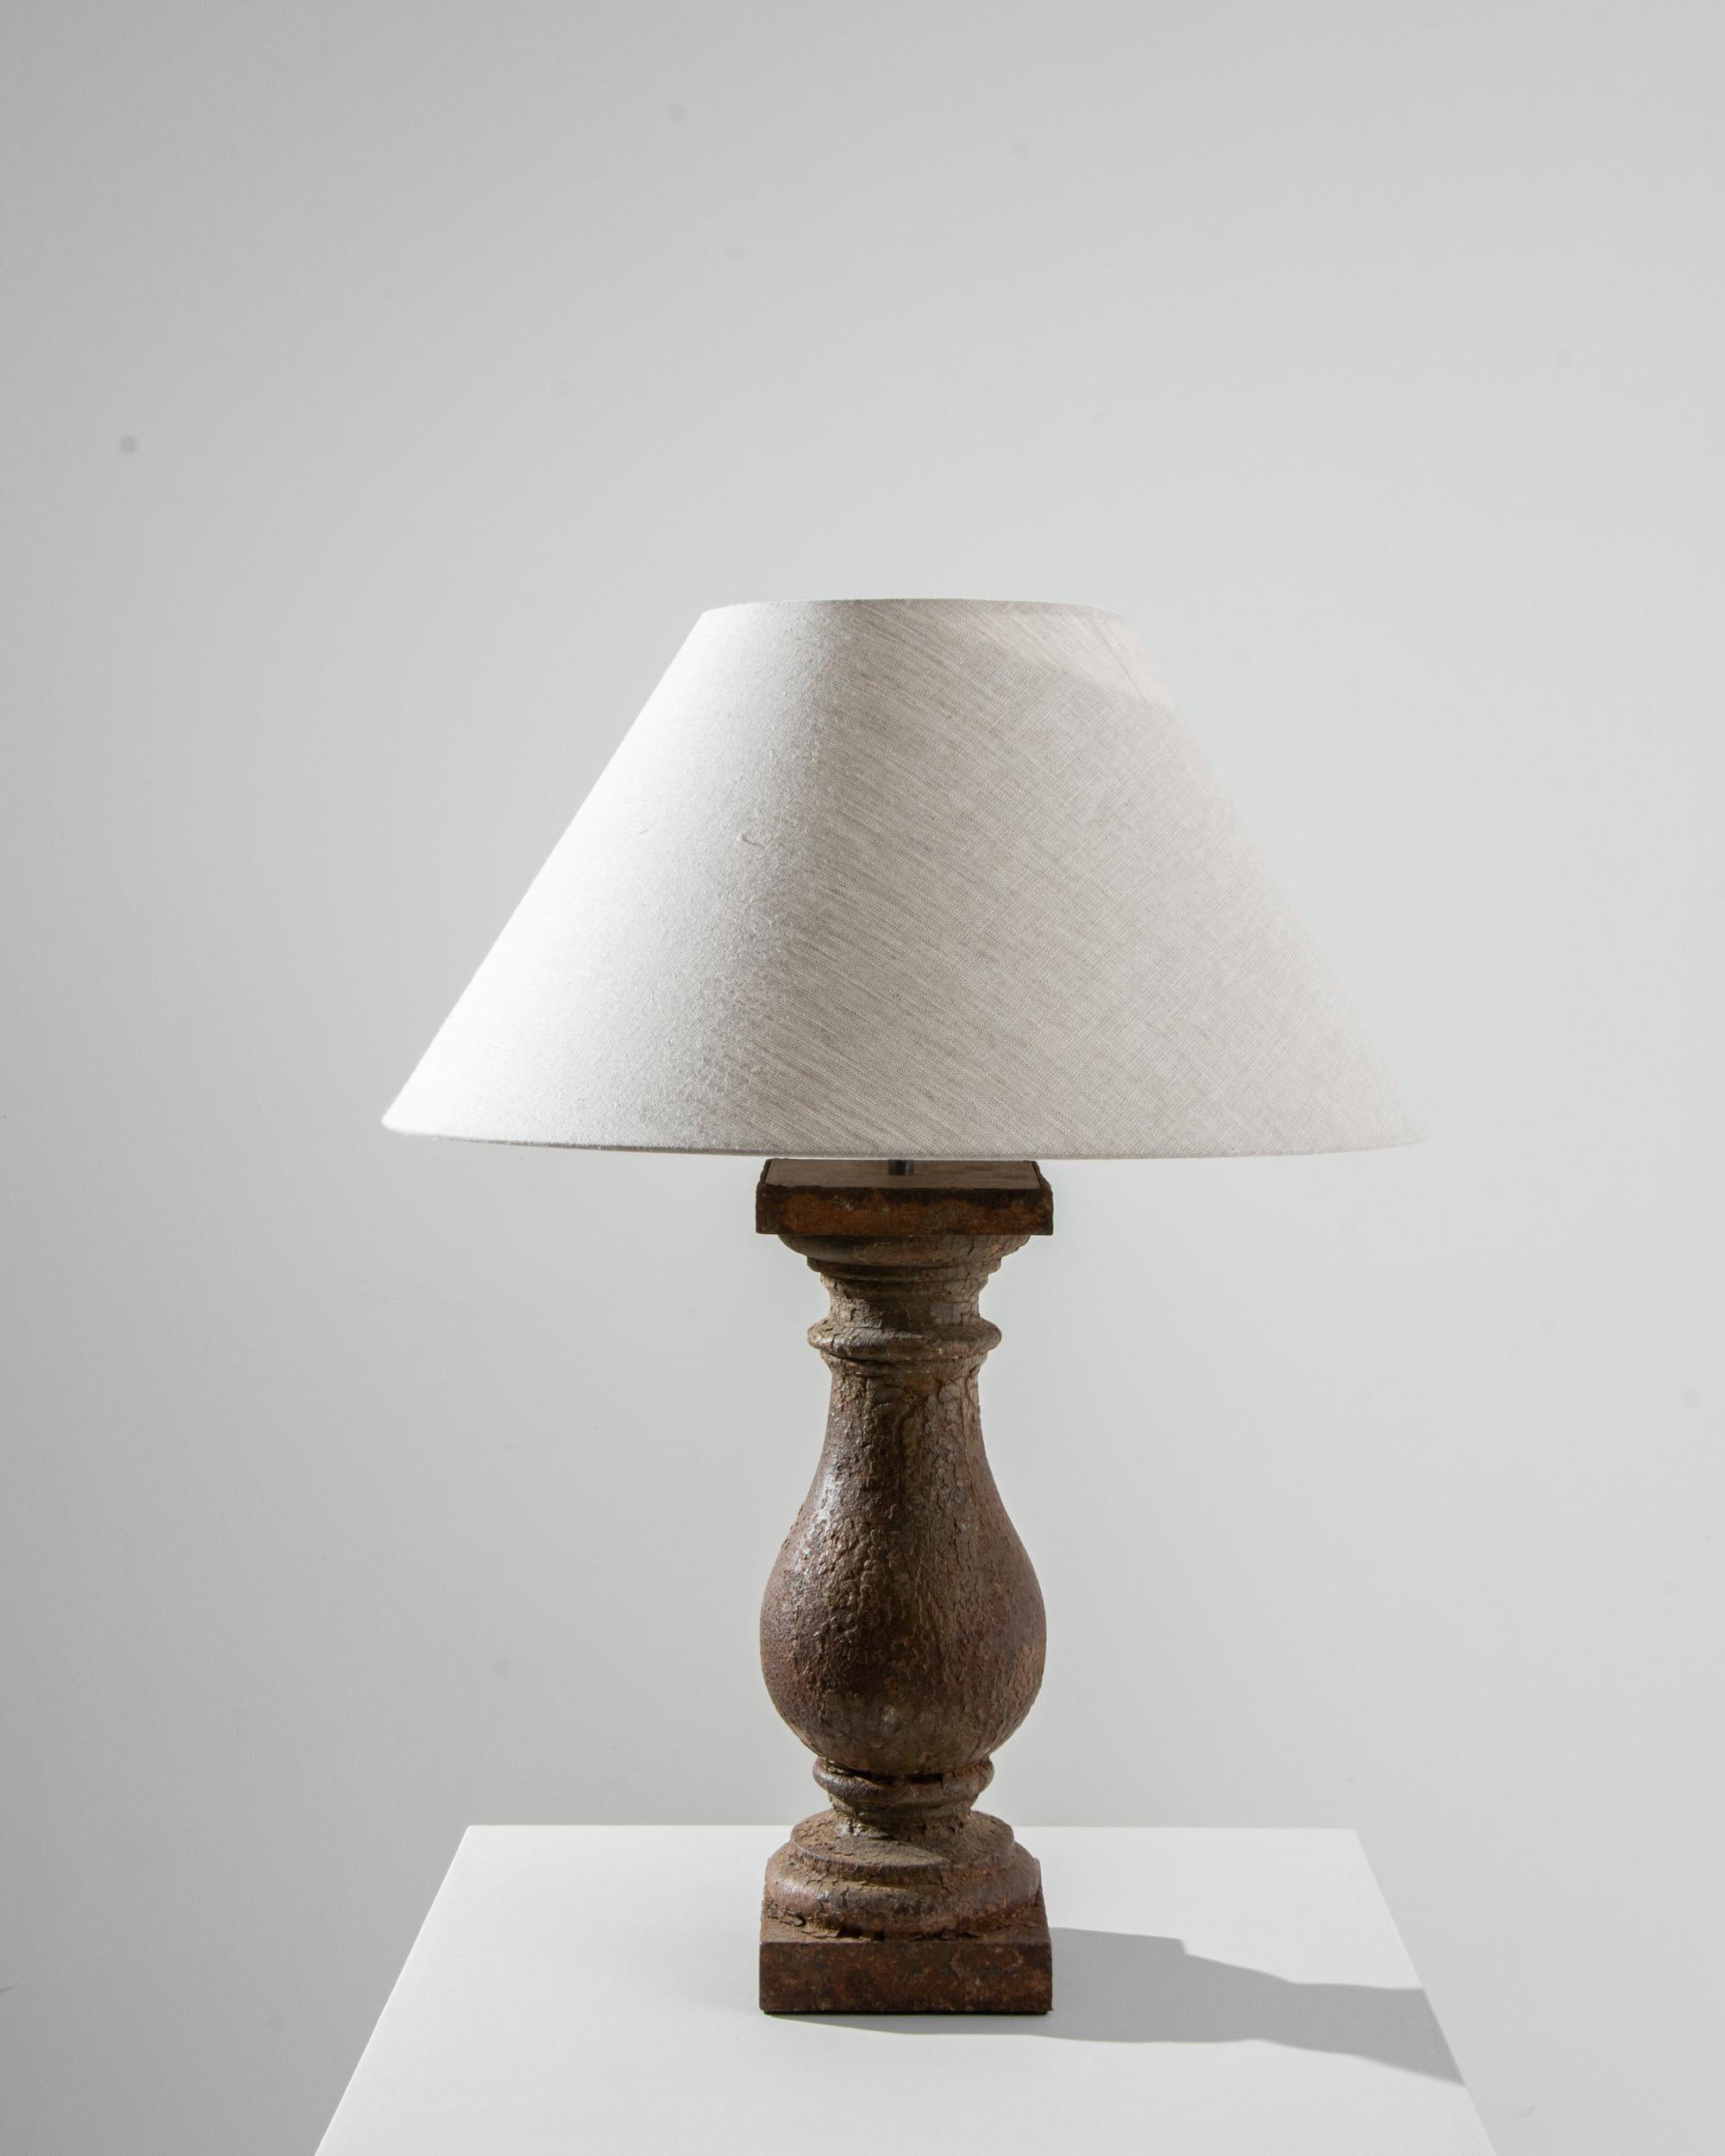 Eine Stehlampe aus Metall, die im 19. Jahrhundert in Frankreich hergestellt wurde. Diese elegante und zeitlose Leuchte strahlt eine geheimnisvolle Anziehungskraft aus und weckt ein Gefühl der Wertschätzung für klassisches Design. Der Sockel aus